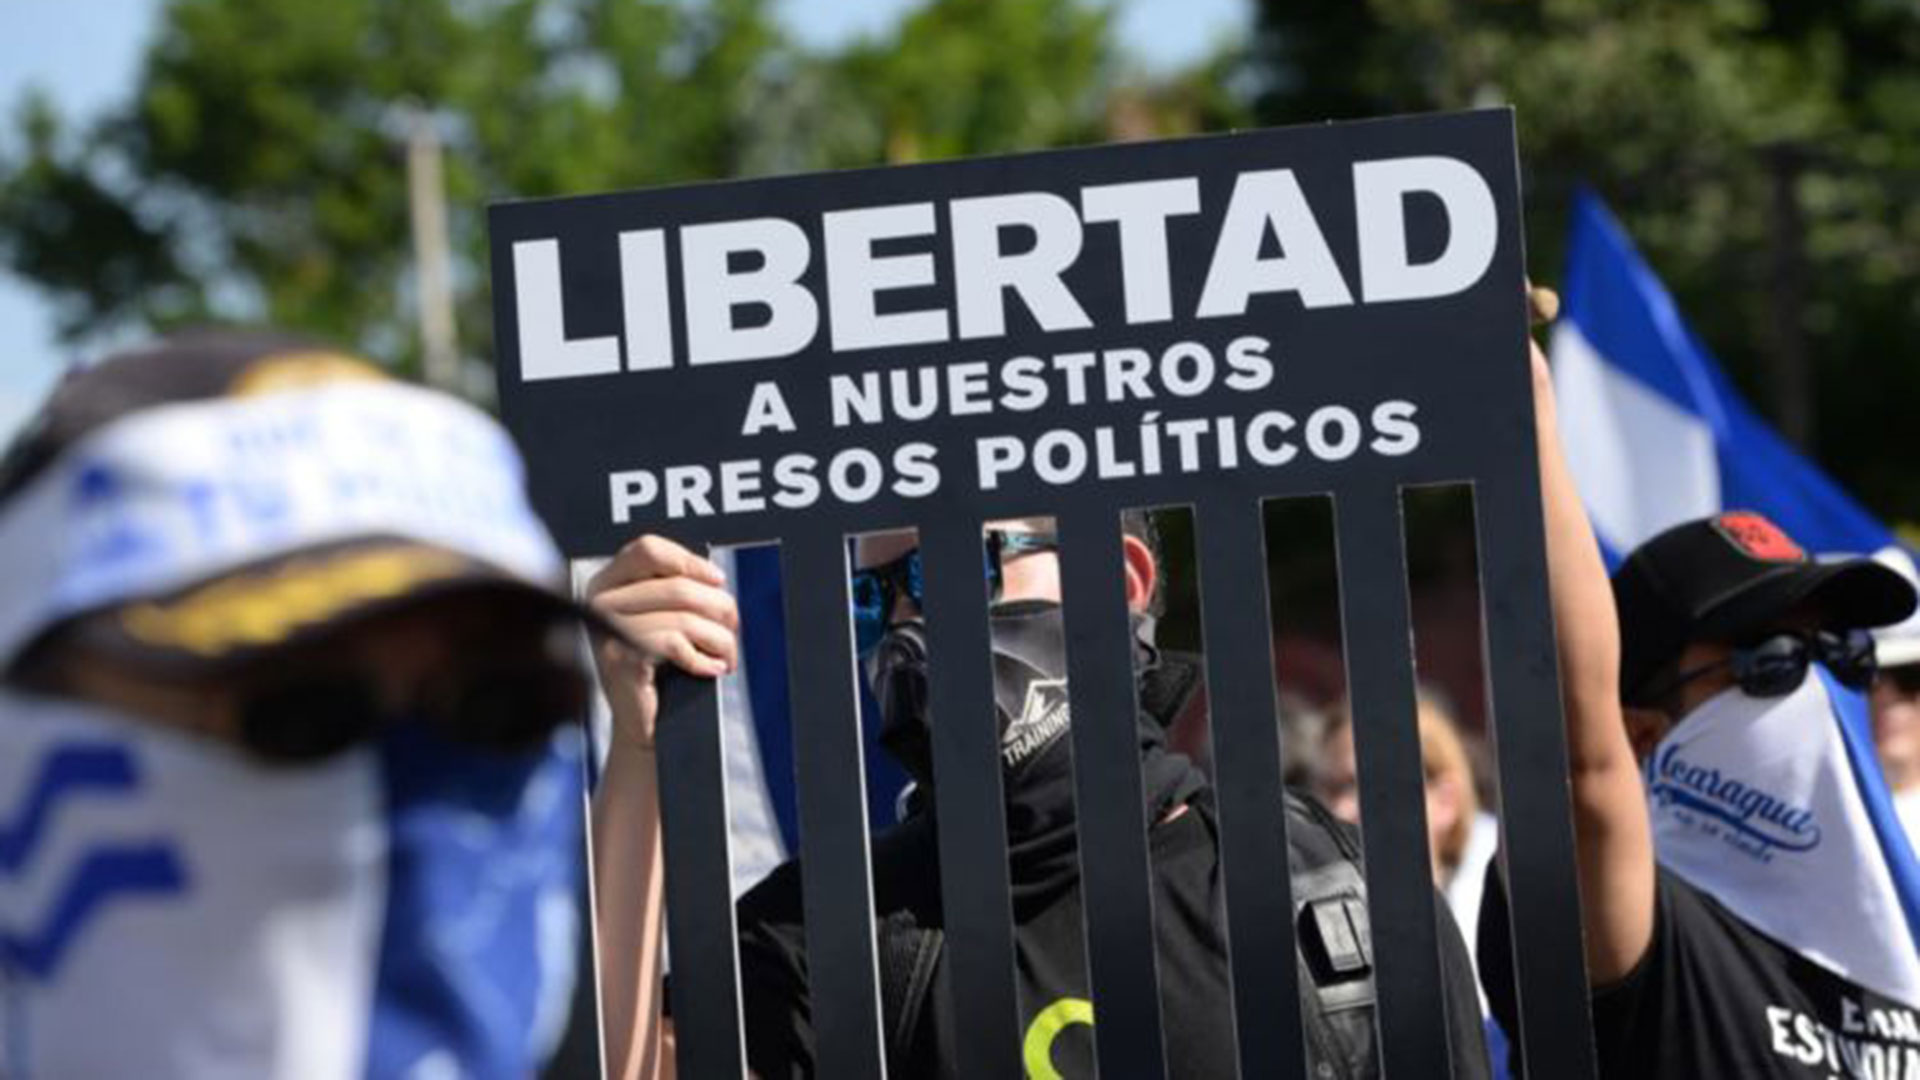 Presos políticos Nicaragua Actual